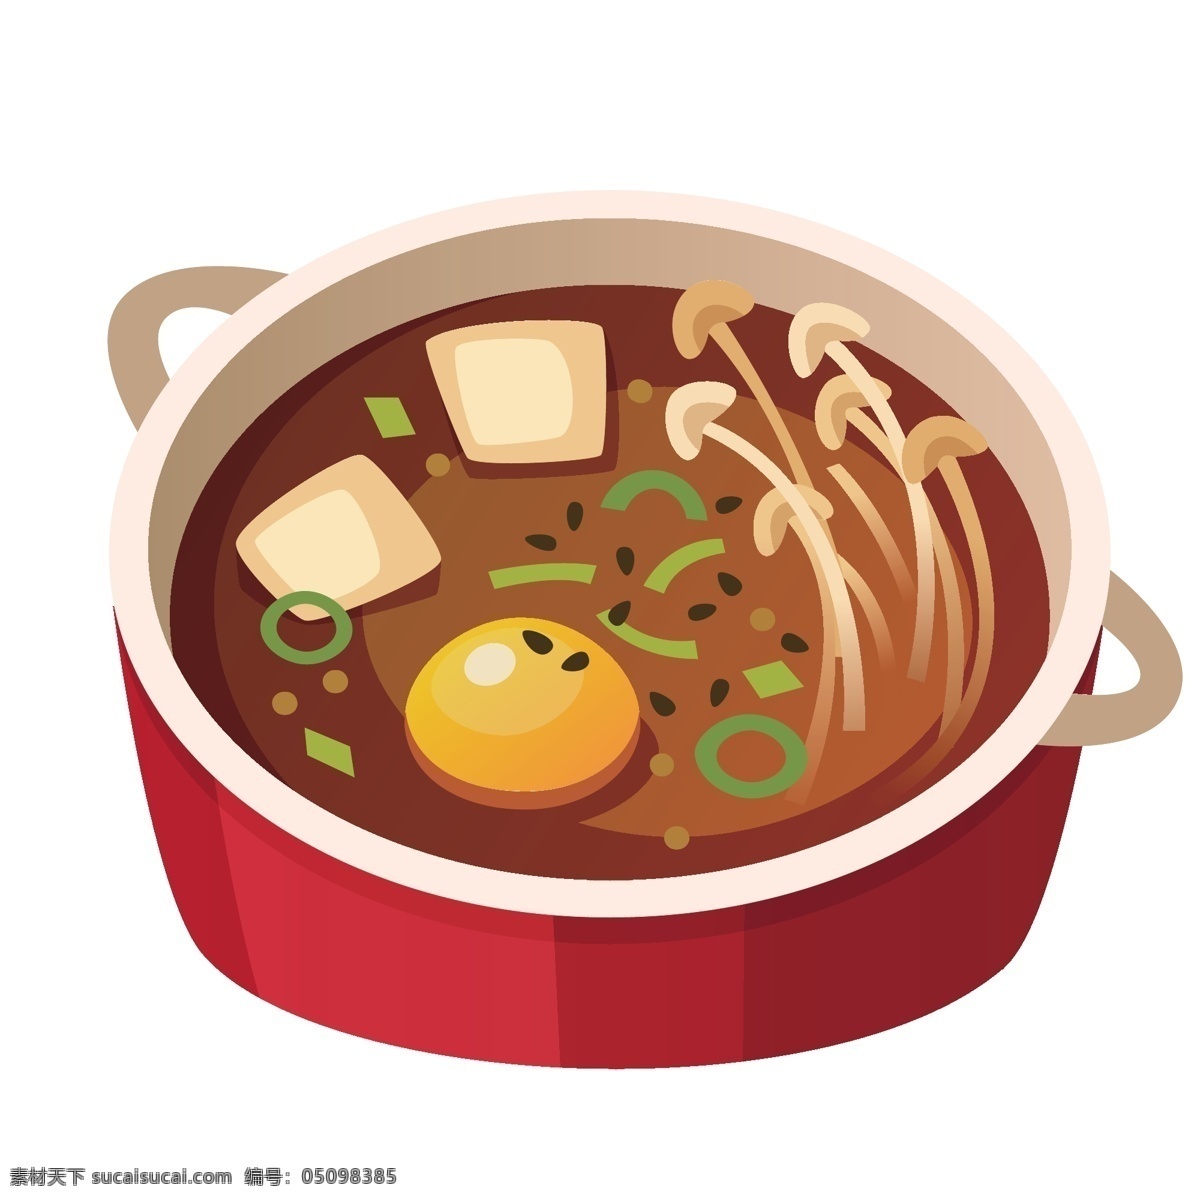 韩国 美食 插画 图案 韩国美食 食物 肉类 海鲜 素菜 碗装食物 烧烤 烤串 精美 创意 装饰图案 小清新 餐饮 点心 餐厅 动漫动画